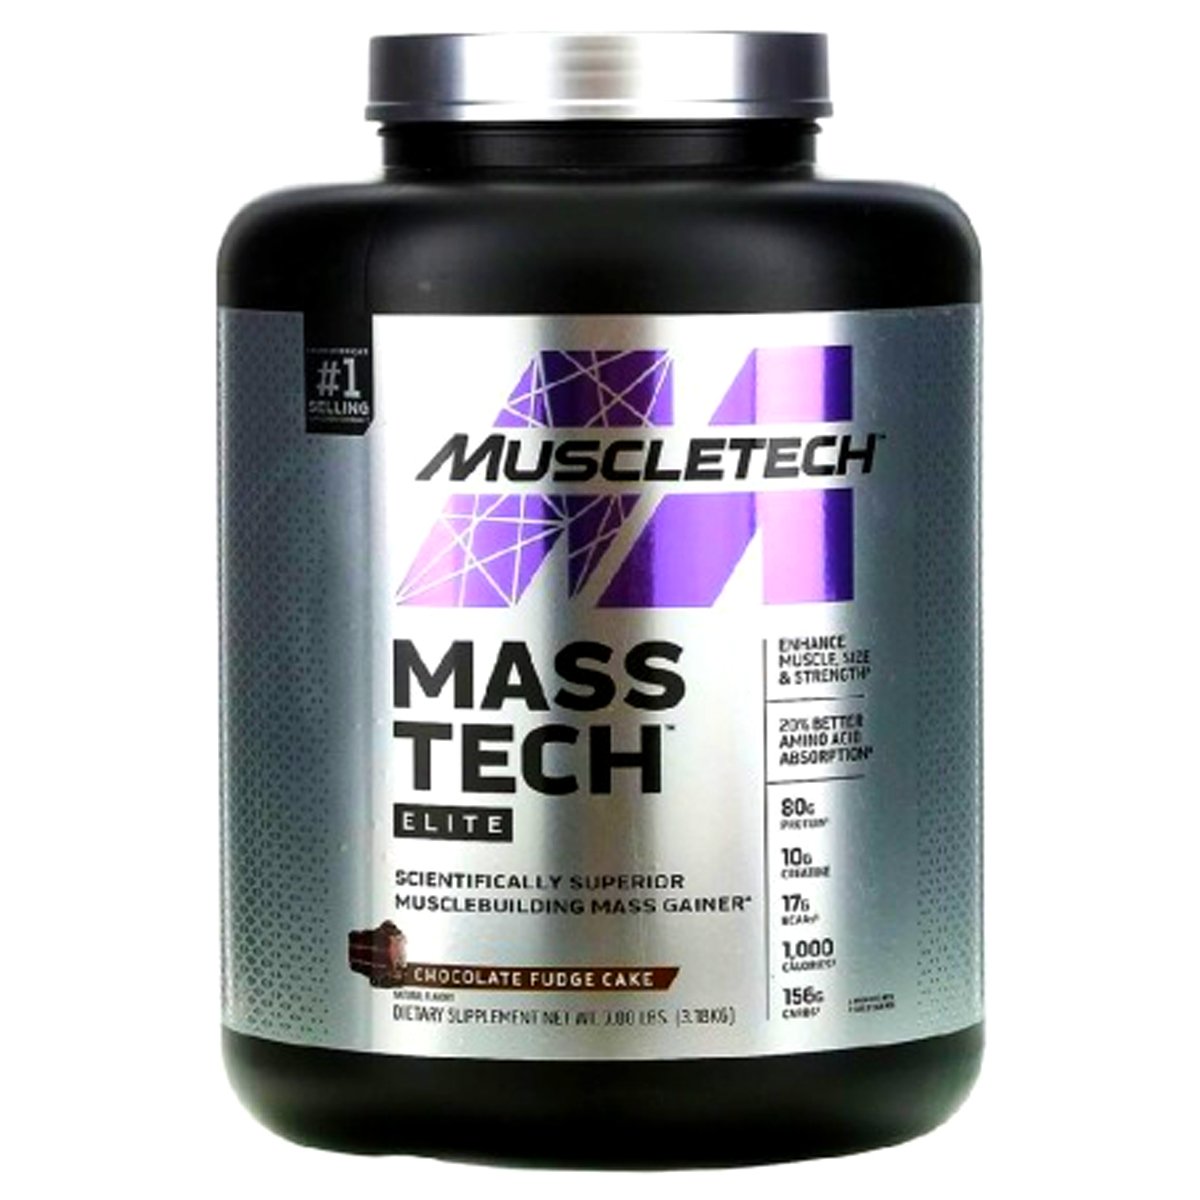 MuscleTech Mass Tech Elite, 7 lb